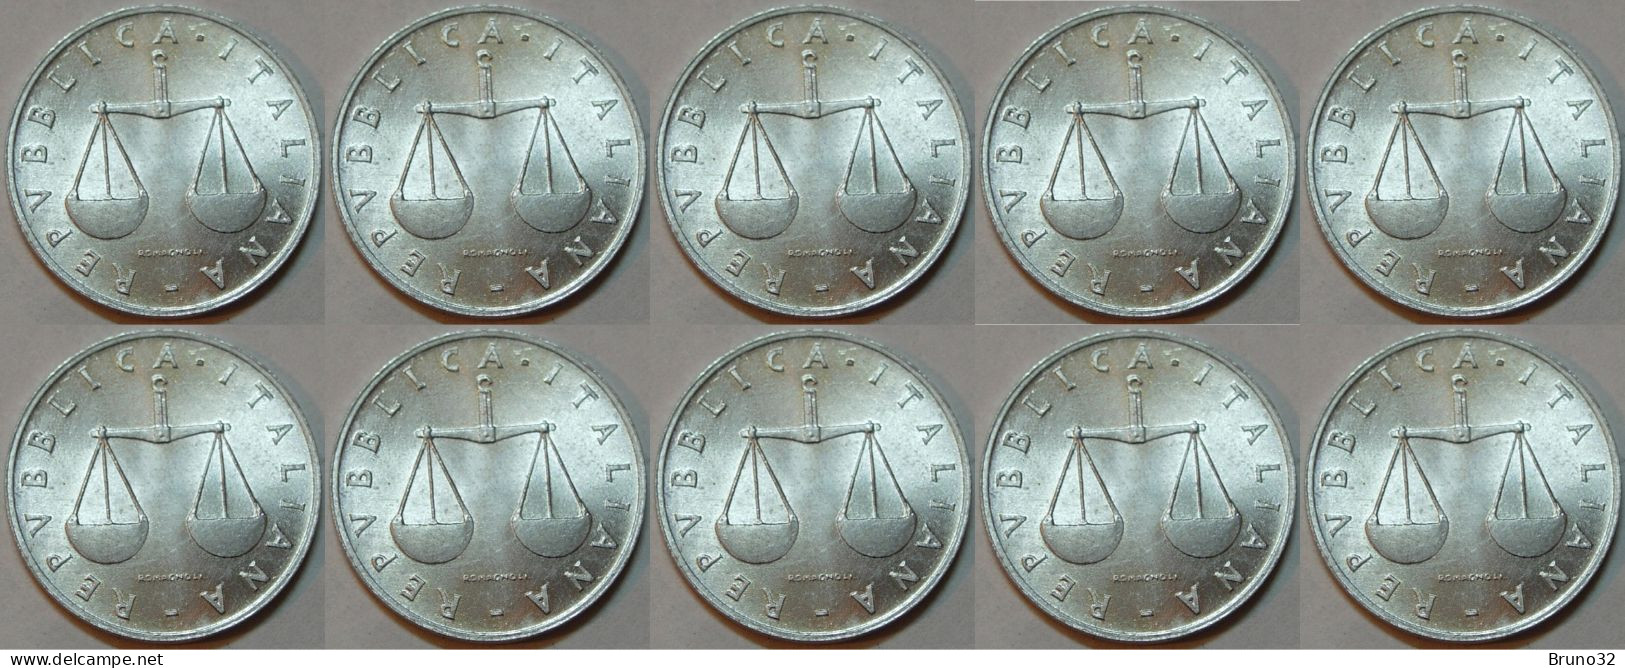 ITALIA - Lire 1 1955 - FDC/Unc Da Rotolino/from Roll 10 Monete/10 Coins - 1 Lira